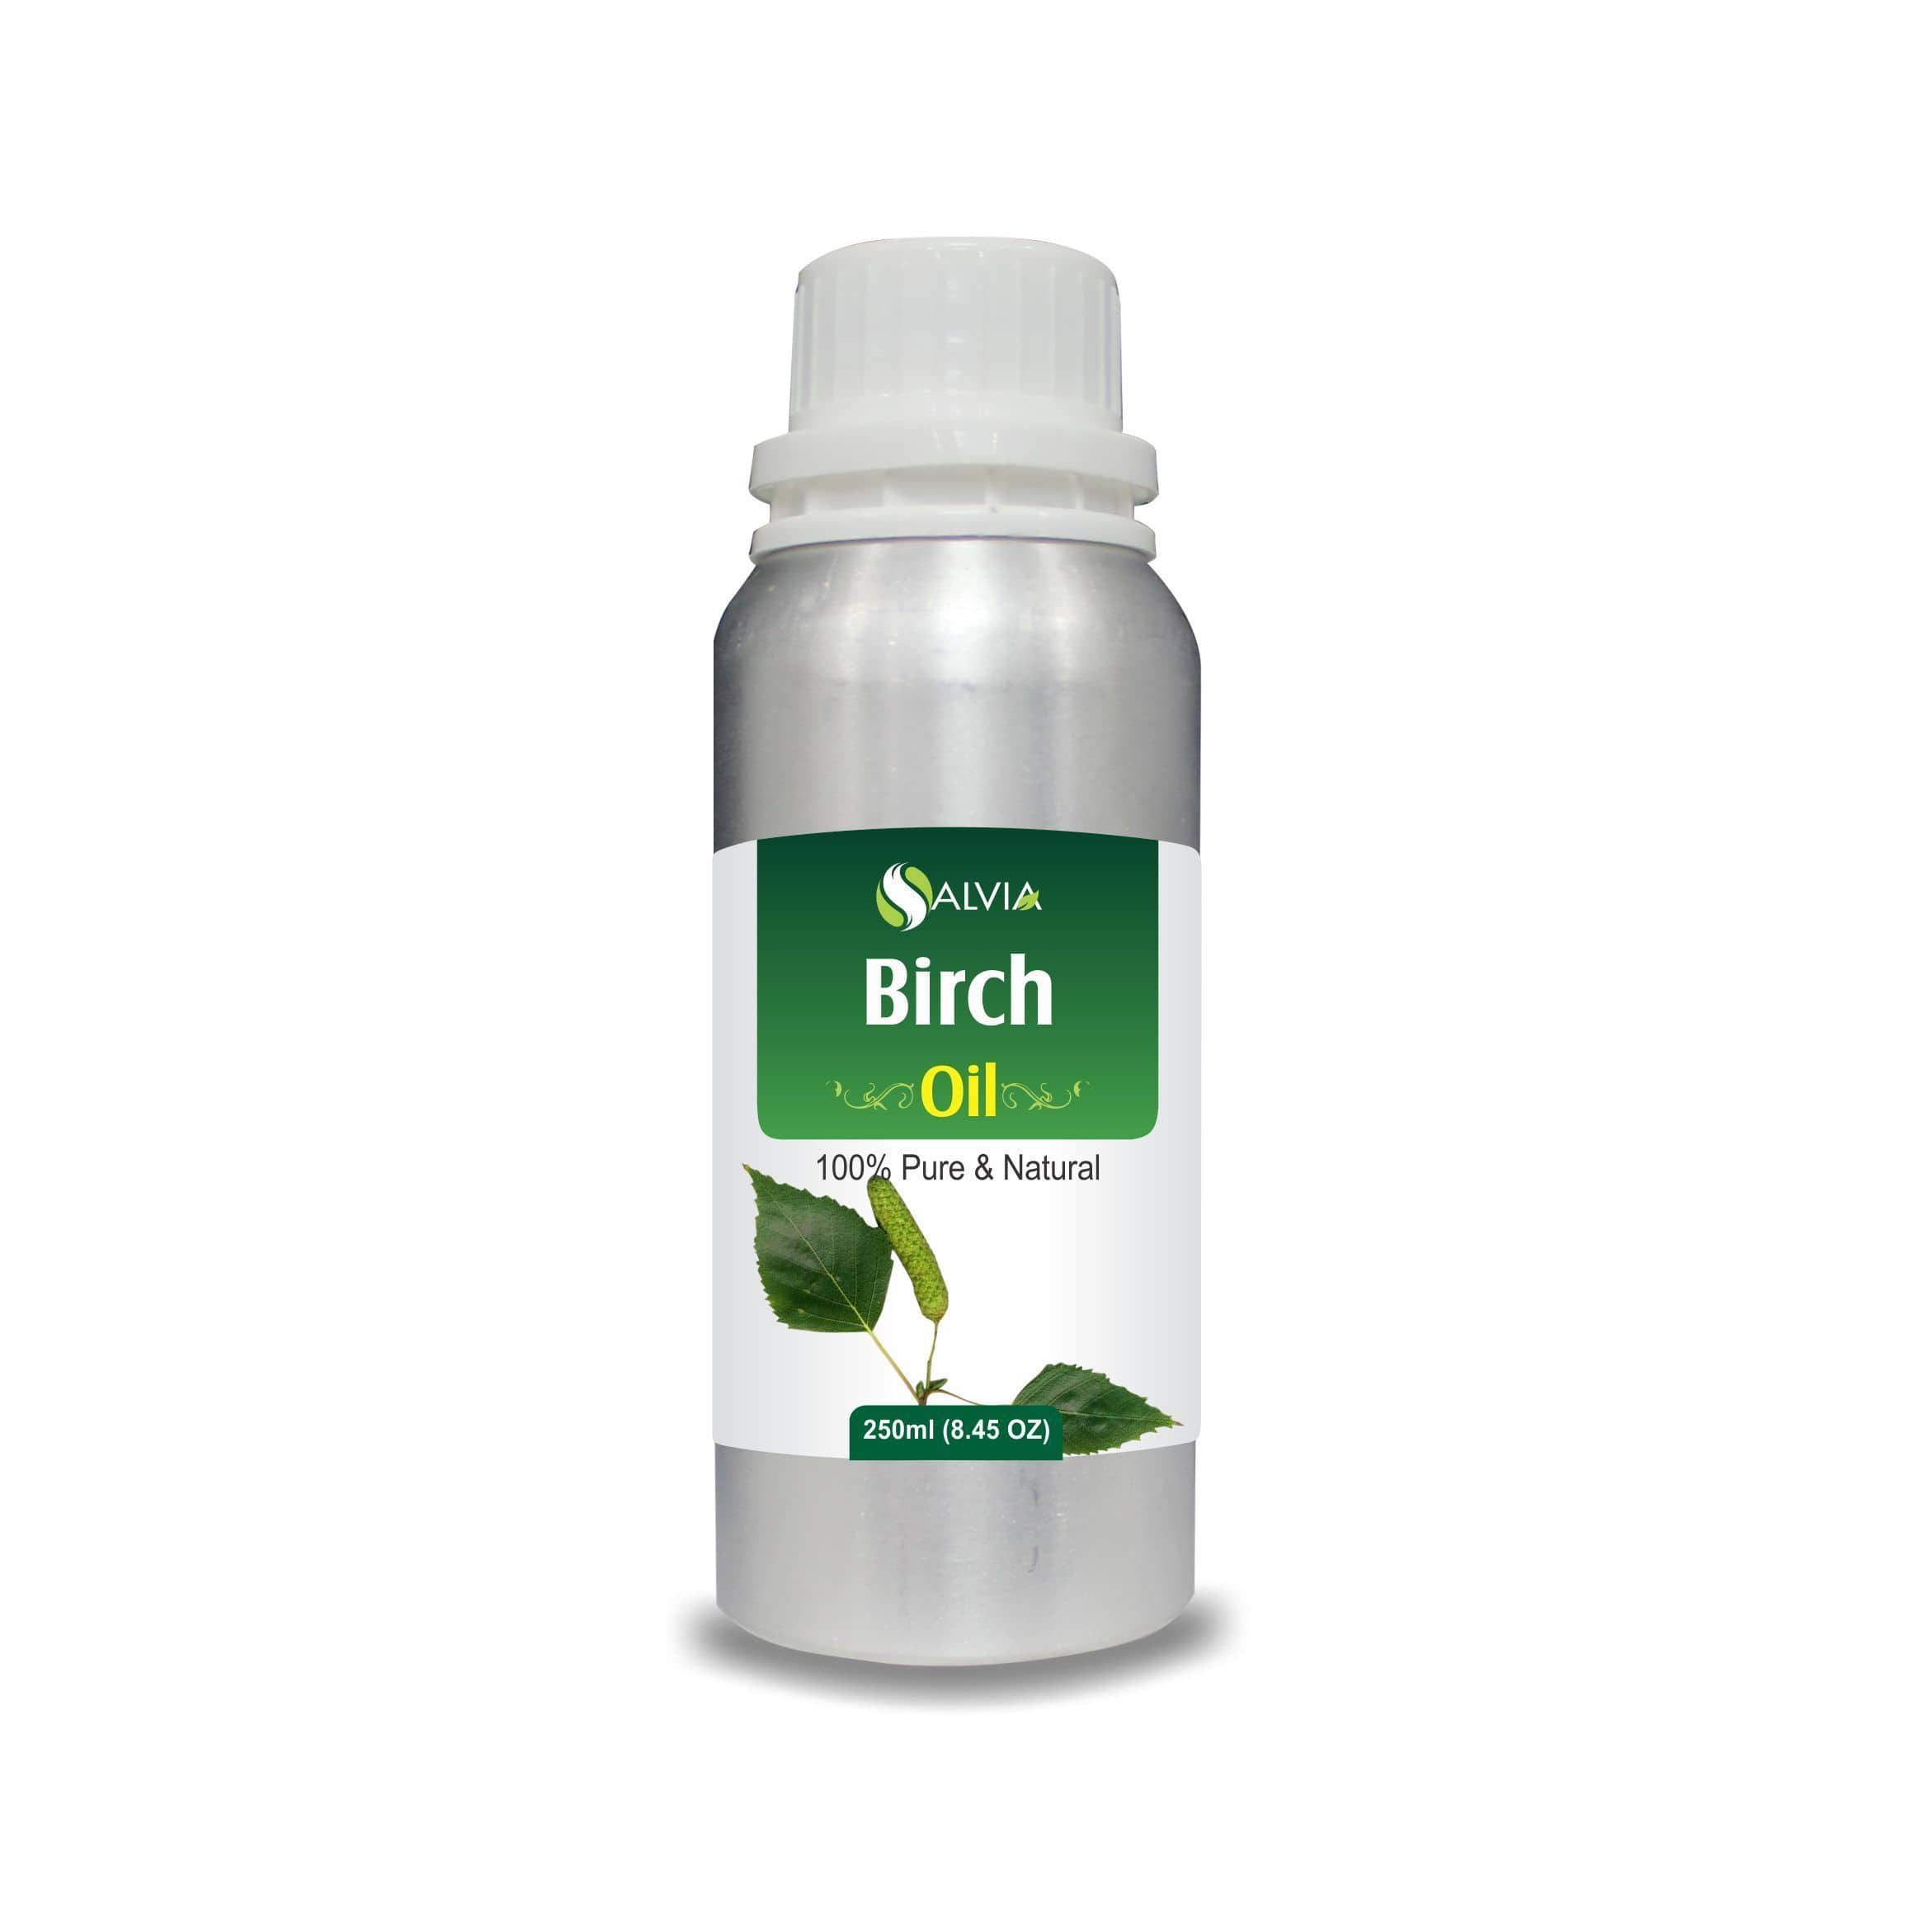 birch oil for hair